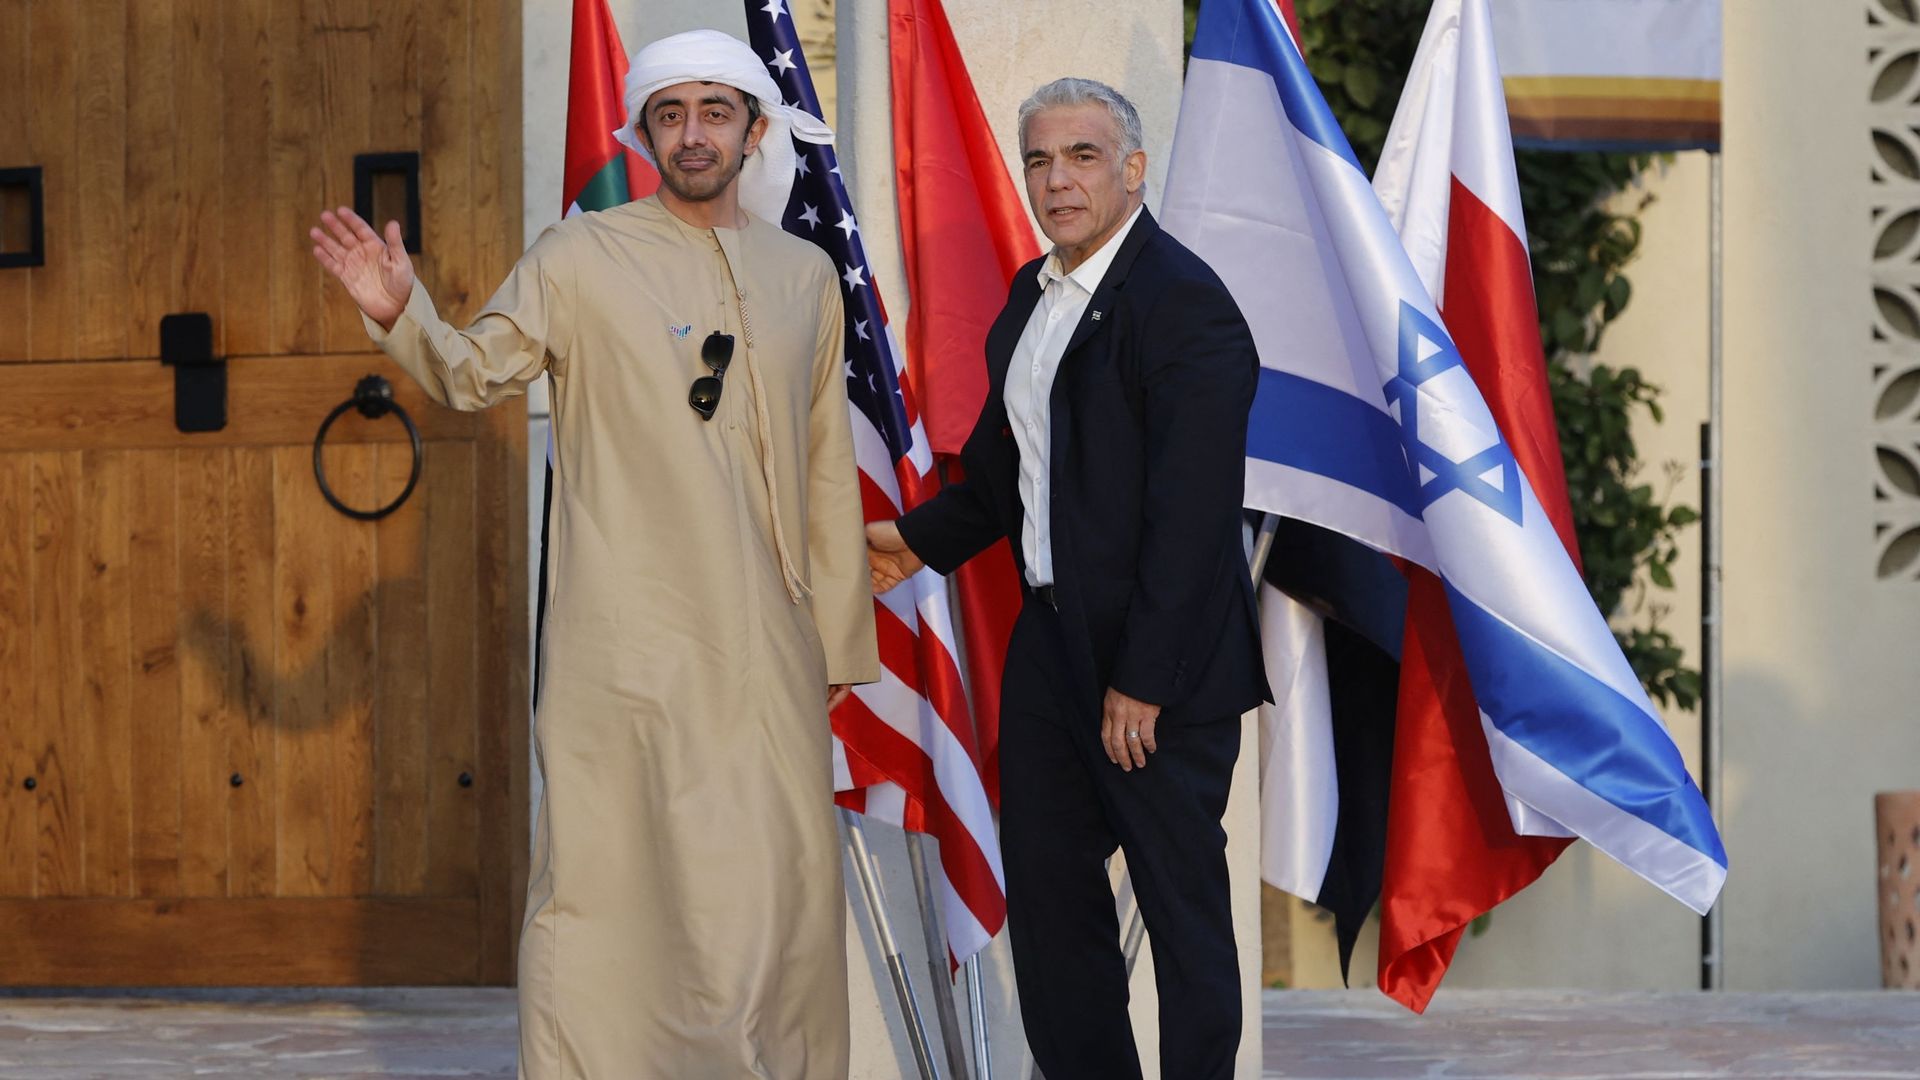 Le ministre israélien des Affaires étrangères, Yair Lapid (G), accueille le ministre des Affaires étrangères des Émirats arabes unis, Sheikh Abdullah bin Zayed al-Nahyan, à son arrivée au Sommet du Néguev, à Sde Boker, dans le désert du Néguev, le 27 mars